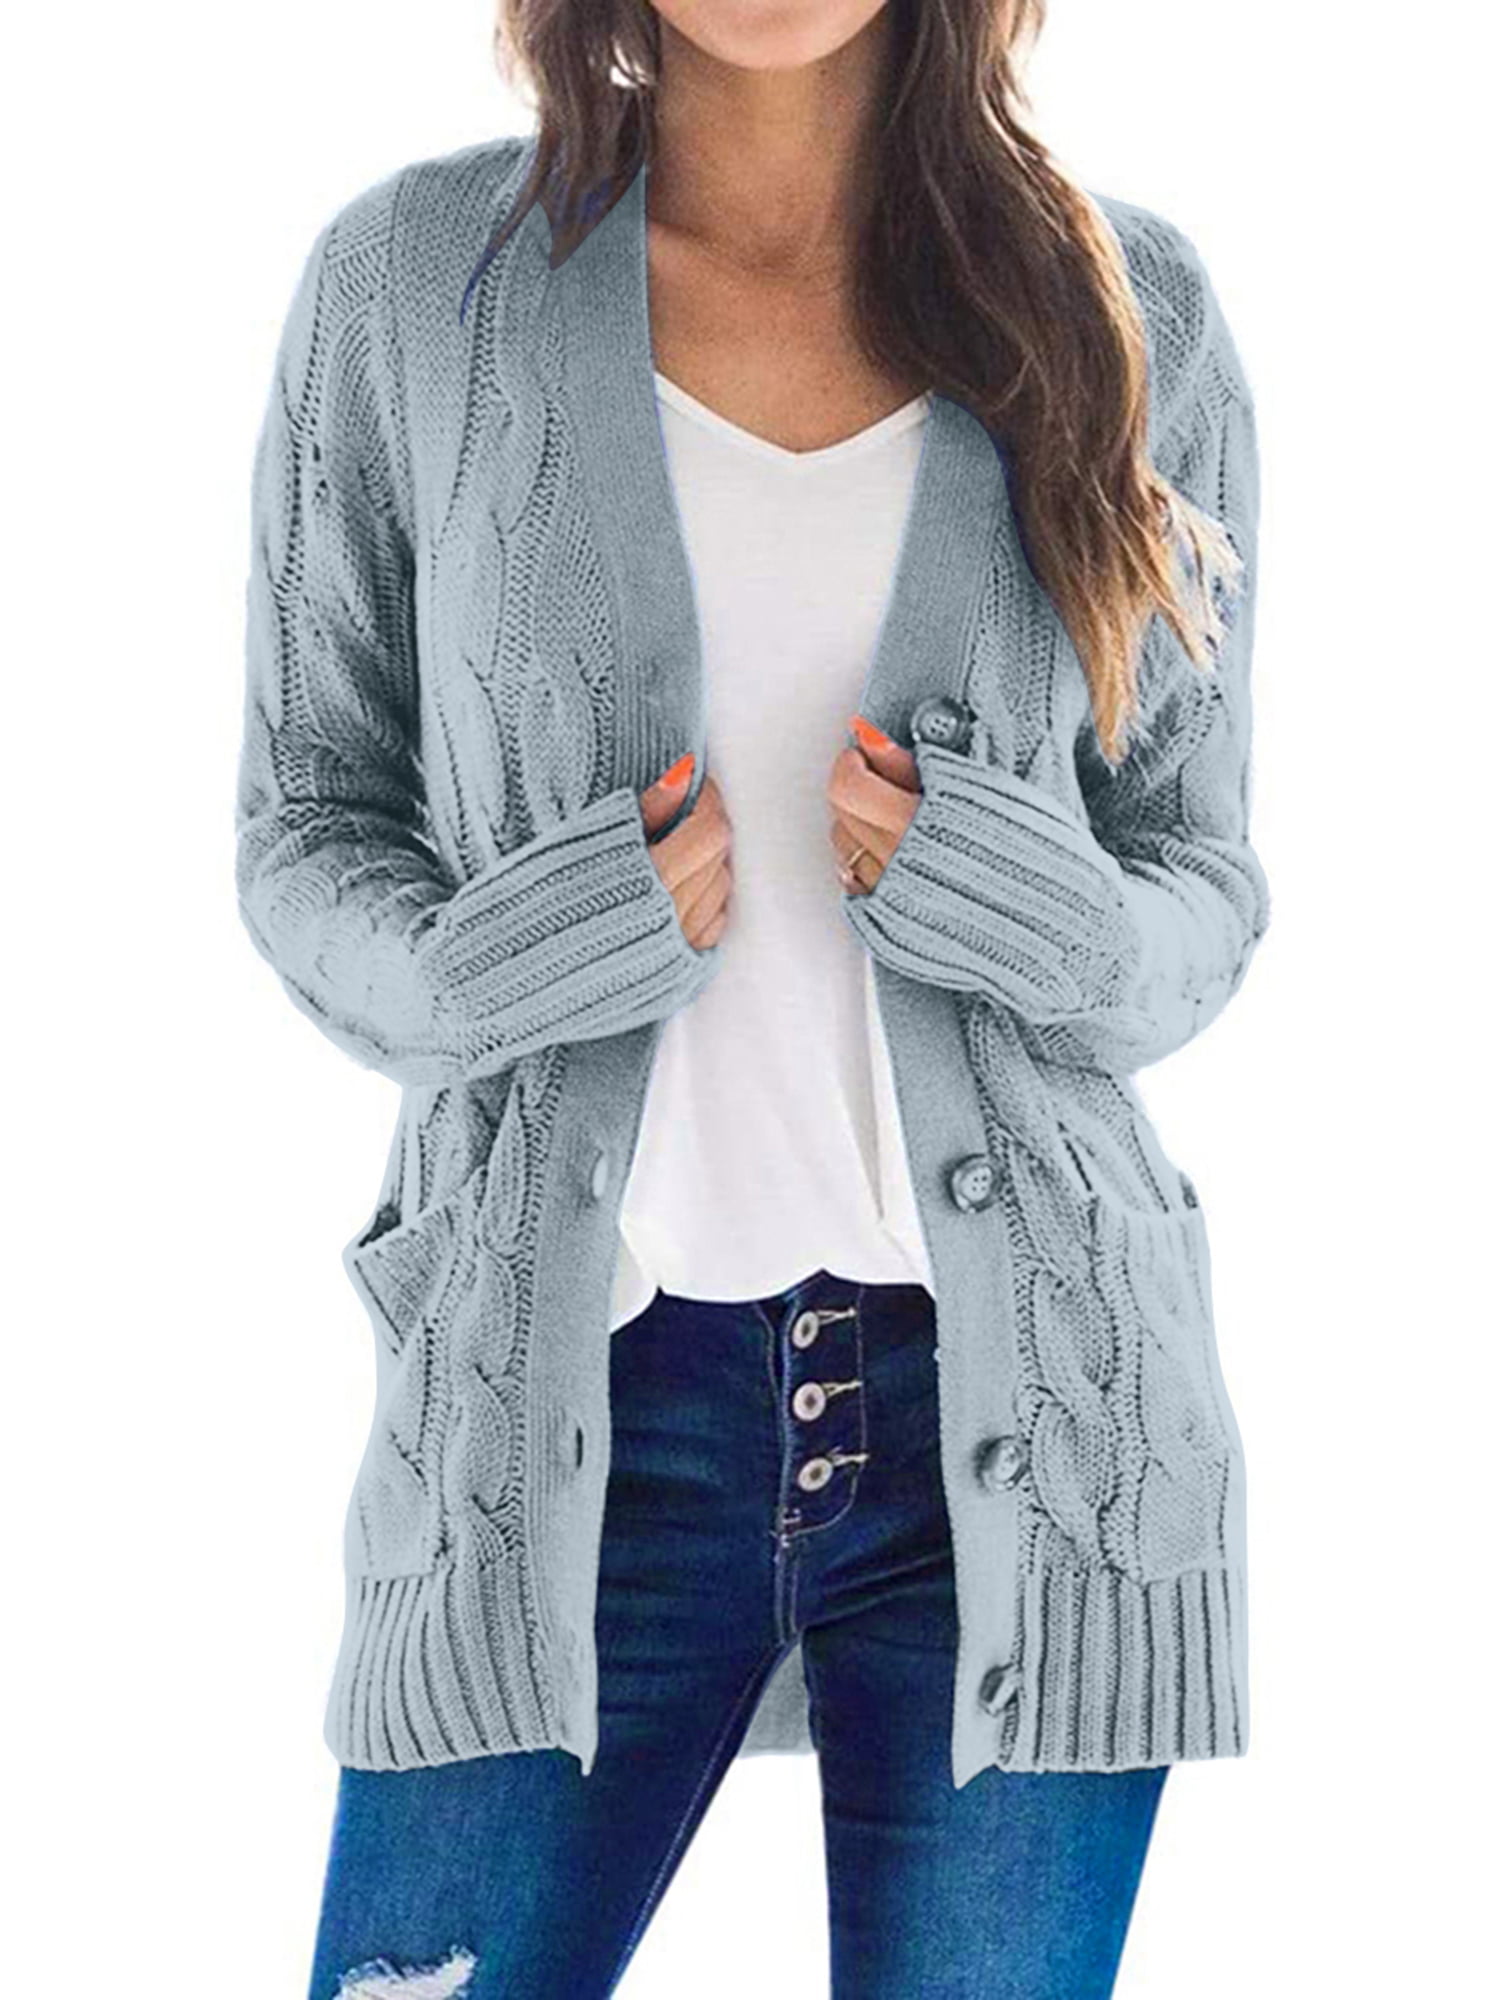 Women Long Sleeve Knit Open Front Cardigan Top Jacket Jumper Coat Sweater S-L 